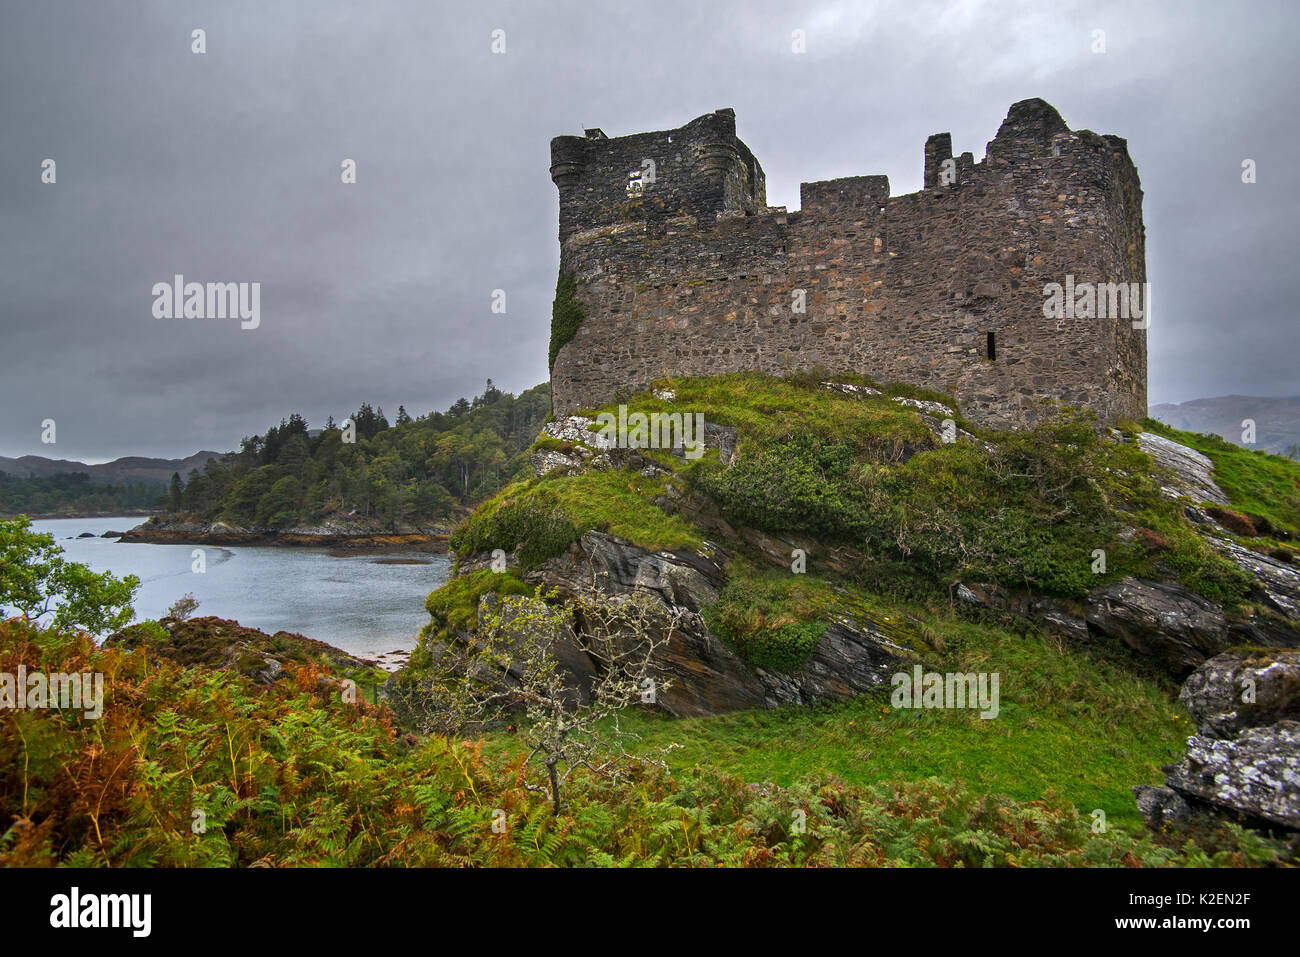 Château de Tioram sur l'île de marée de Tioram Eilean Loch Moidart, Lochaber, Highlands, Écosse, Royaume-Uni, Septembre 2016 Banque D'Images